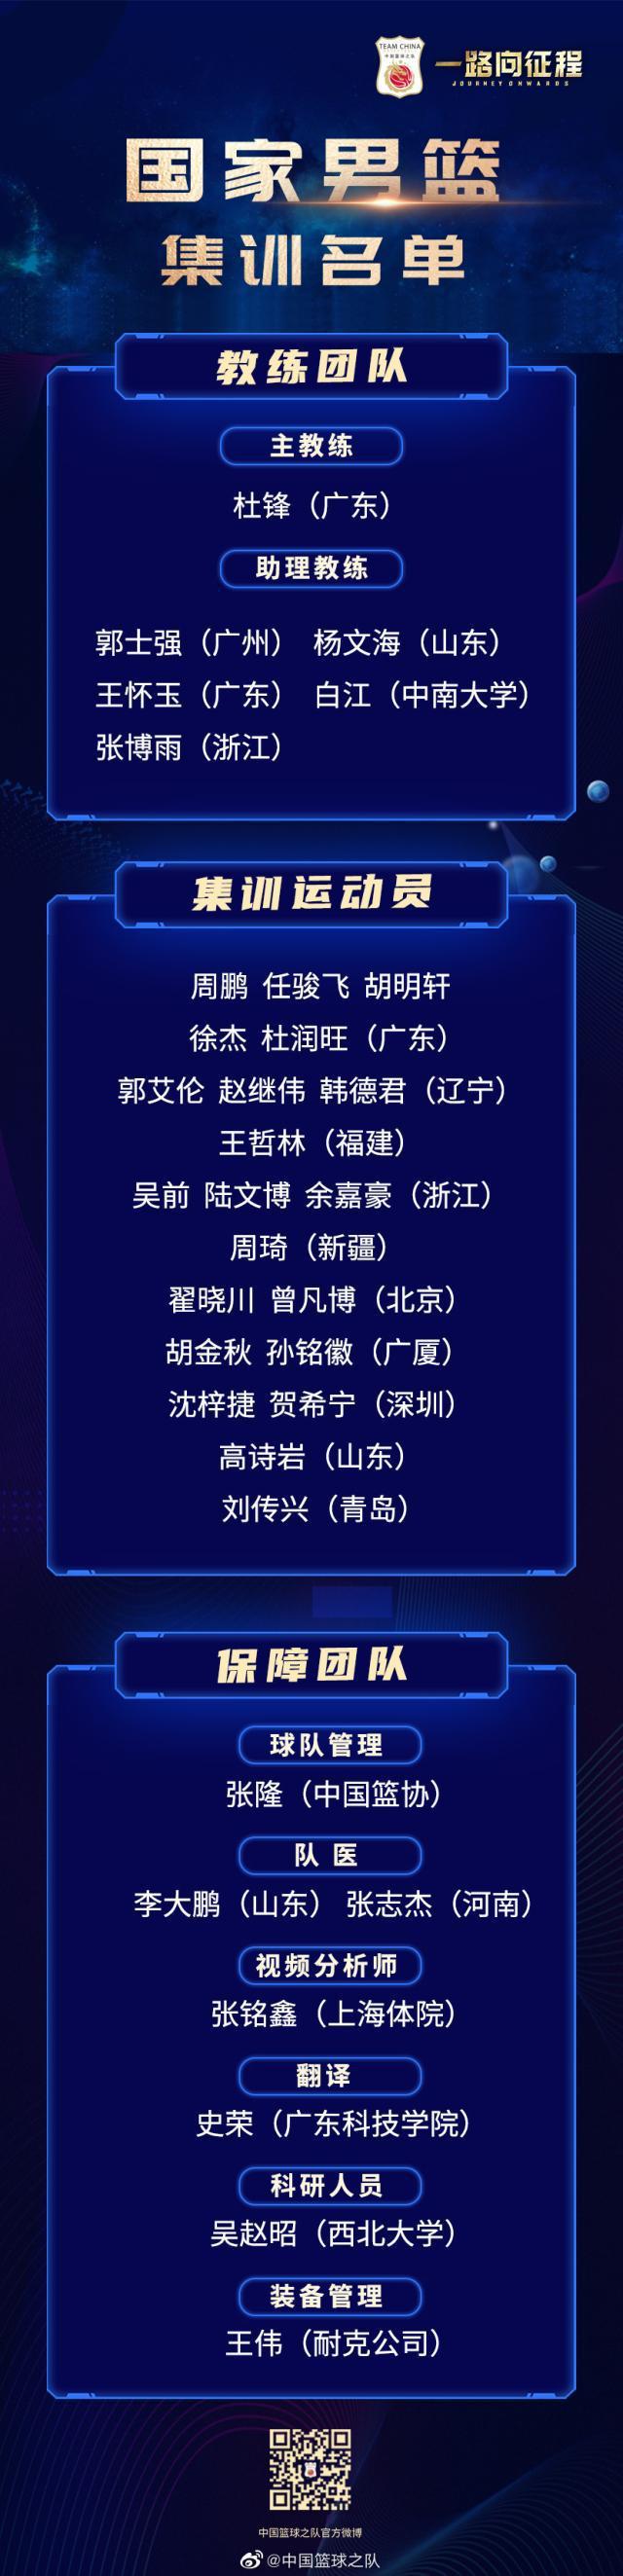 中国男篮集训名单公布 主帅杜锋透露选拔球员标准